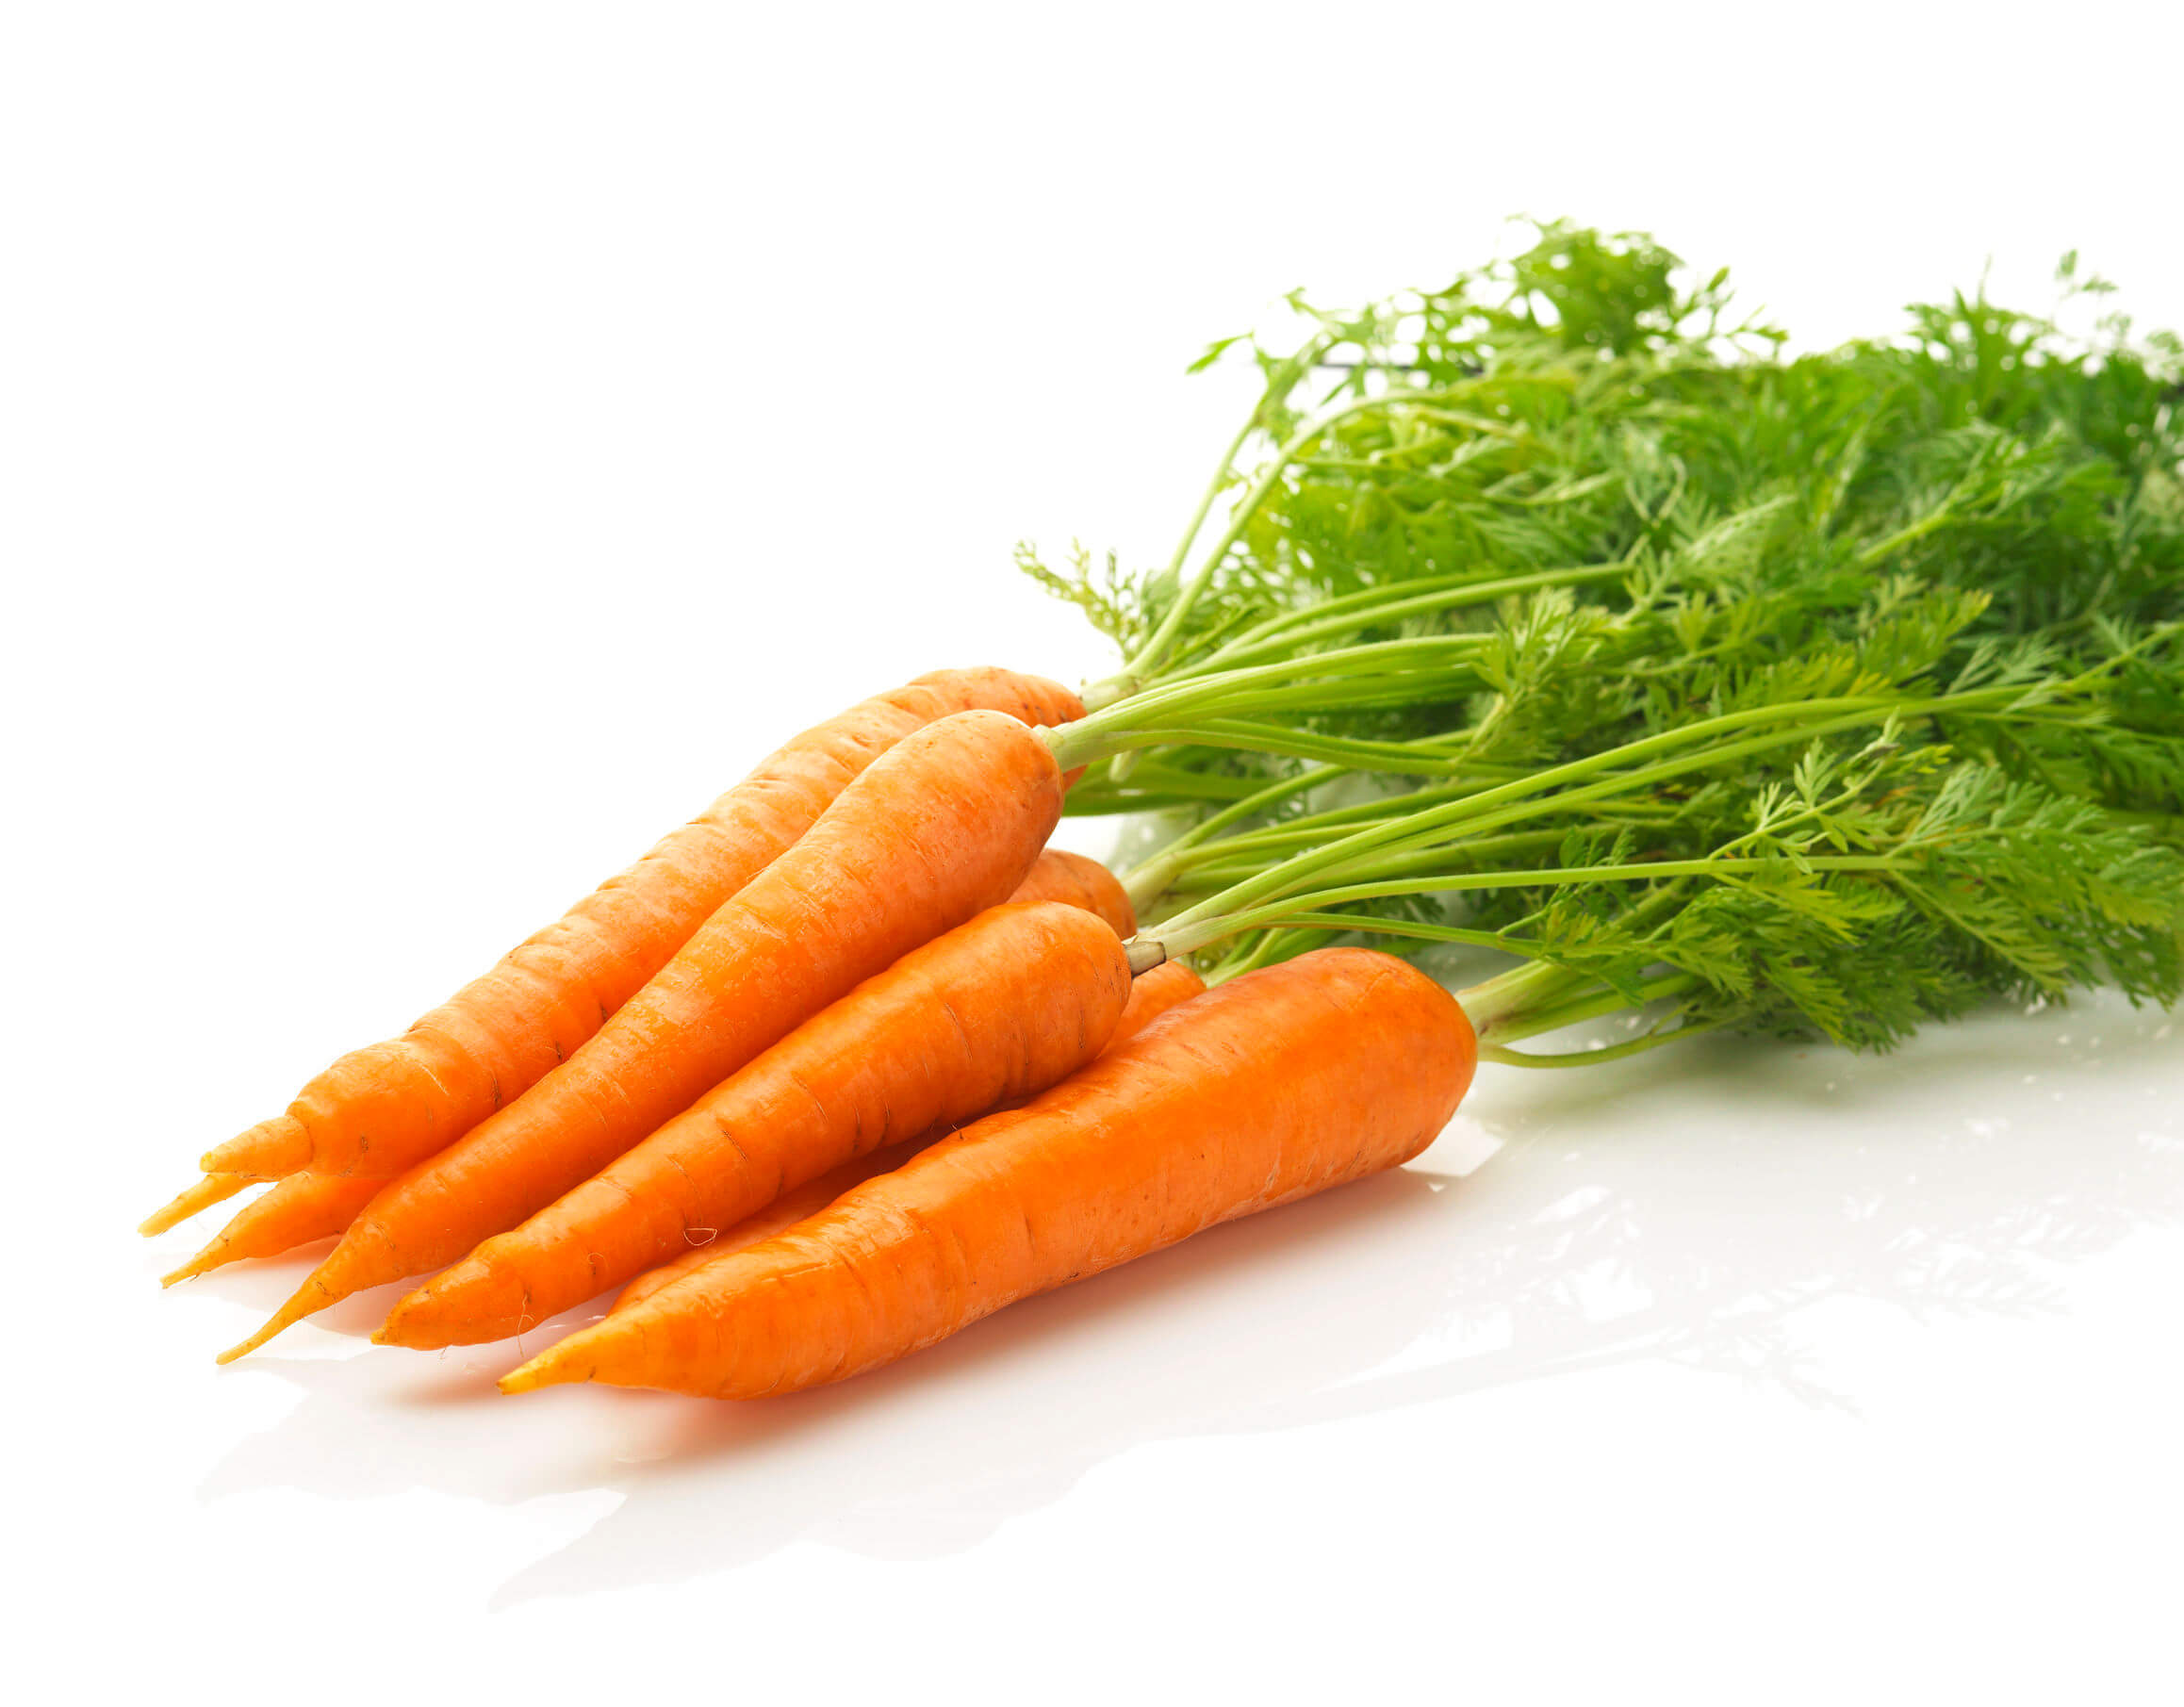 Les carottes sont une excellente source de bêta-carotène